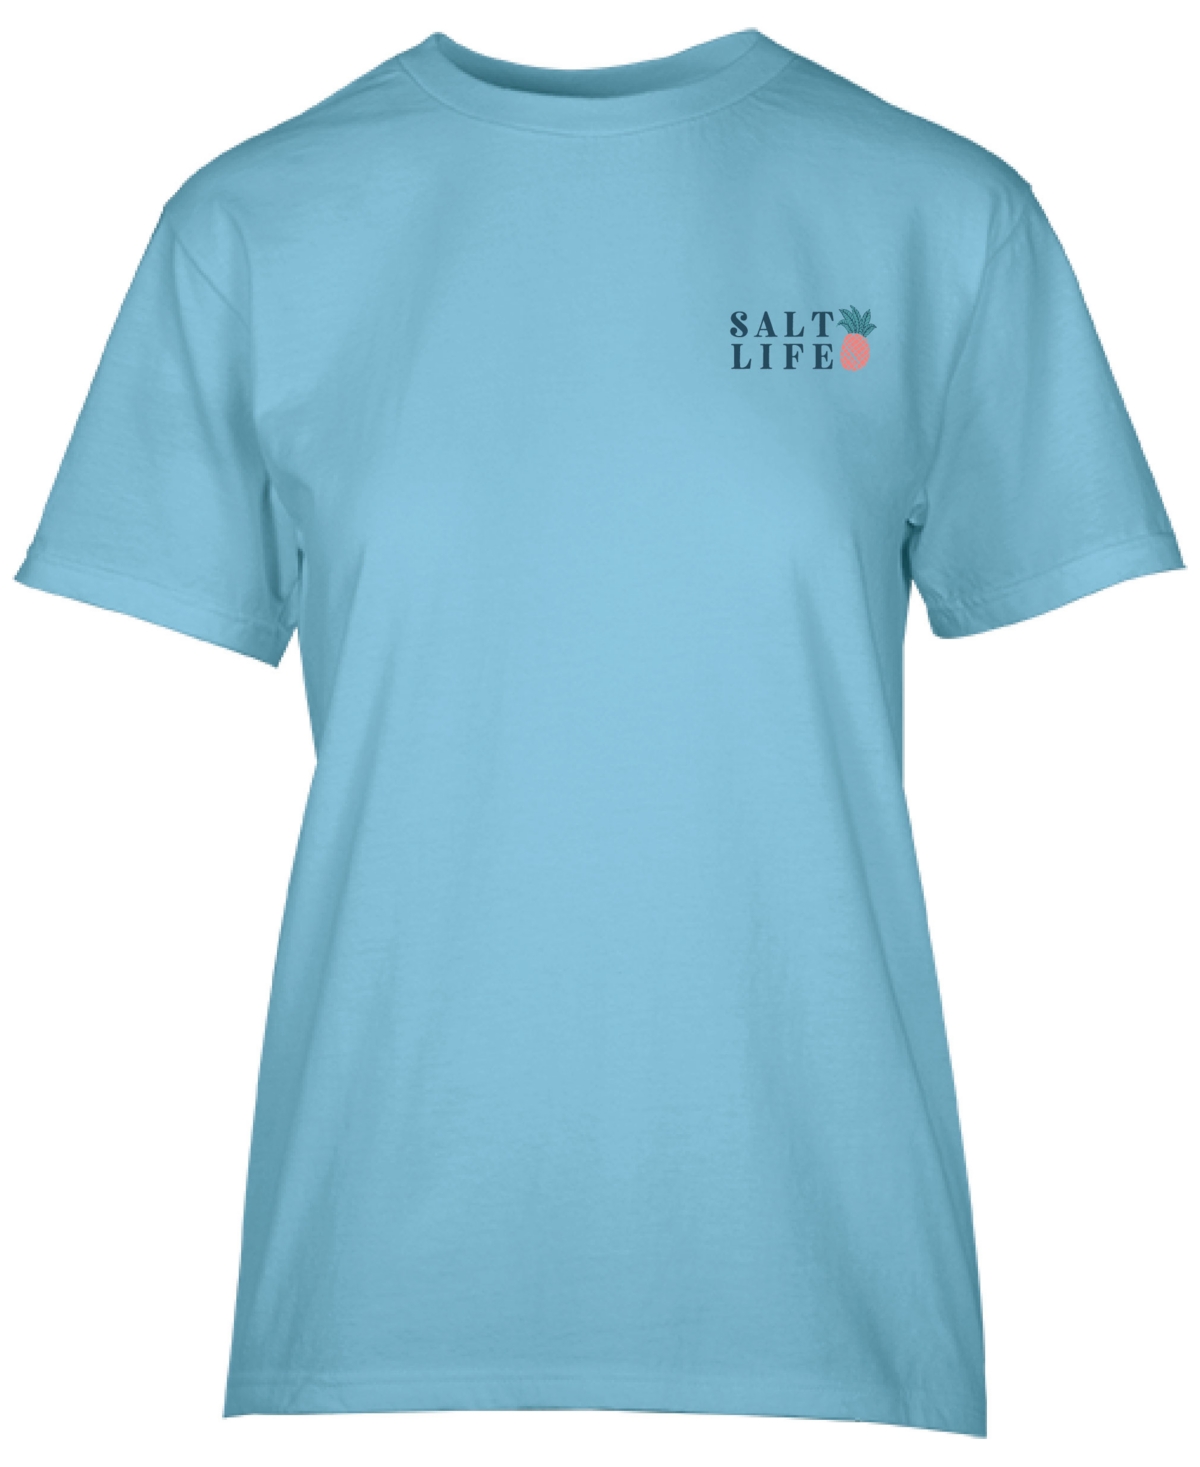 Women's Pineapple Spike Cotton Short-Sleeve T-Shirt - Sky Blue